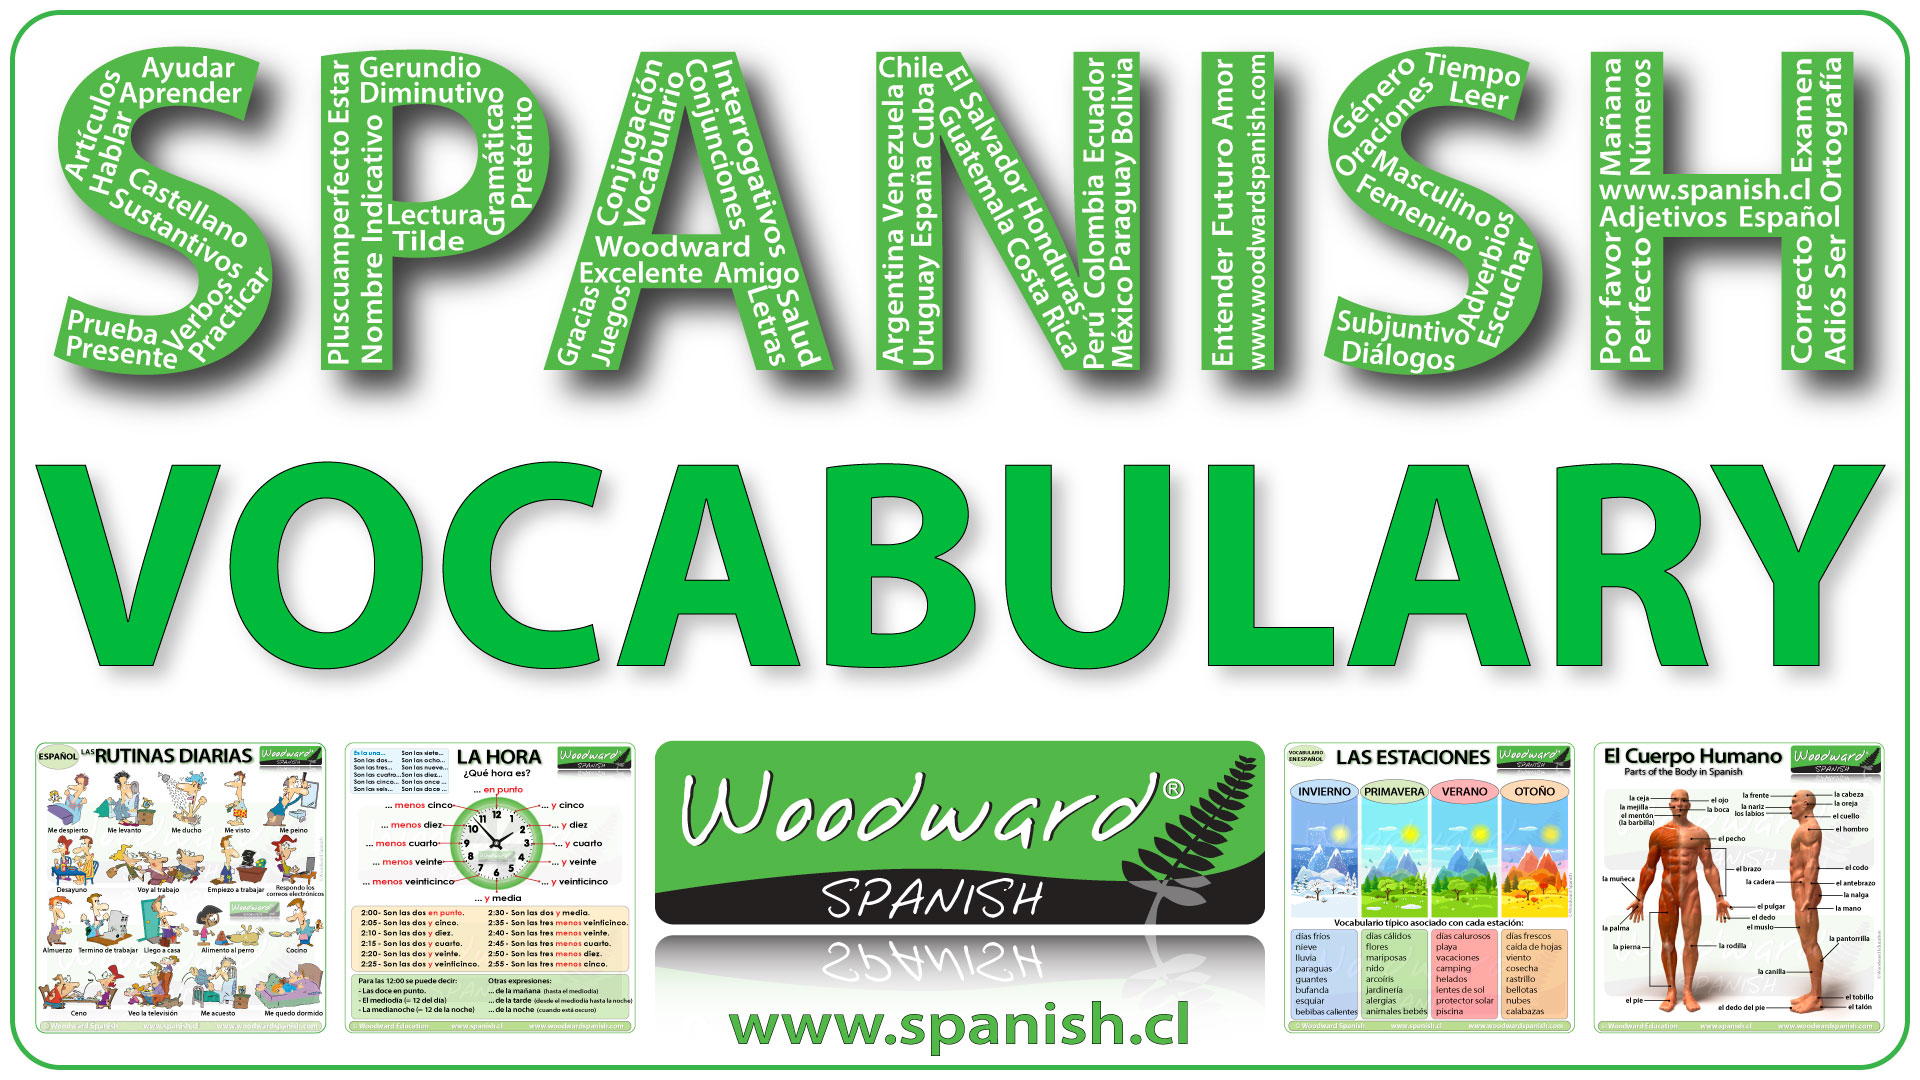 Spanish Vocabulary Lessons - Lecciones de vocabulario en español